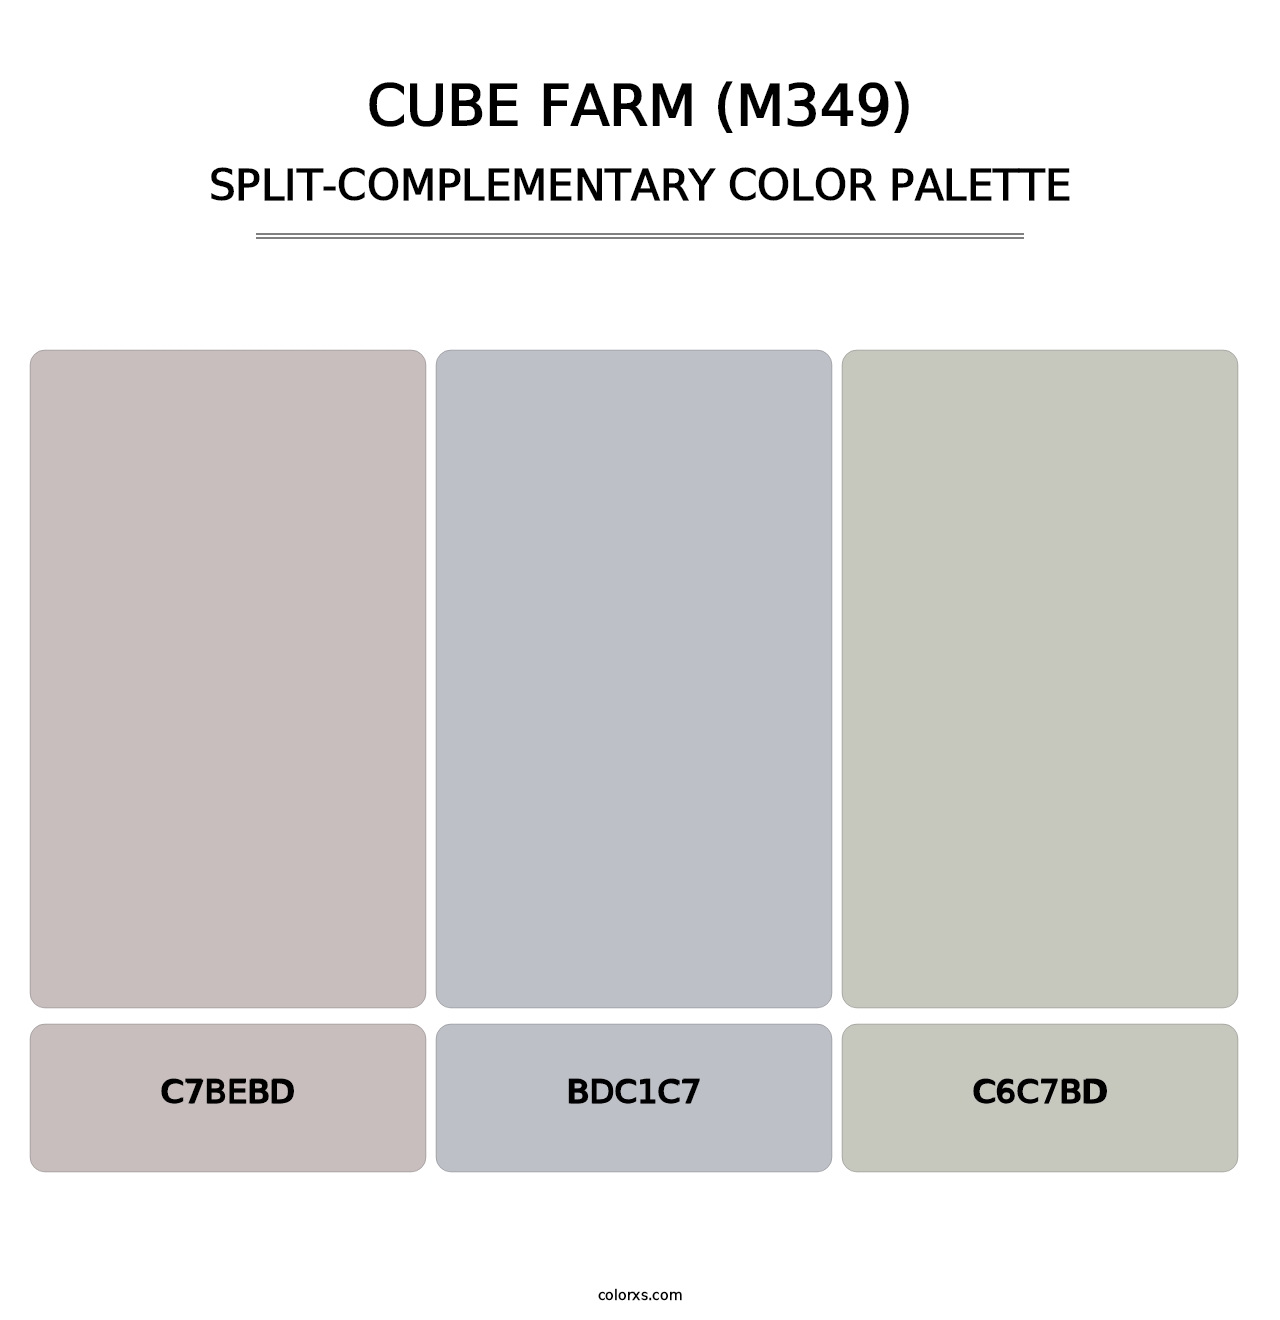 Cube Farm (M349) - Split-Complementary Color Palette